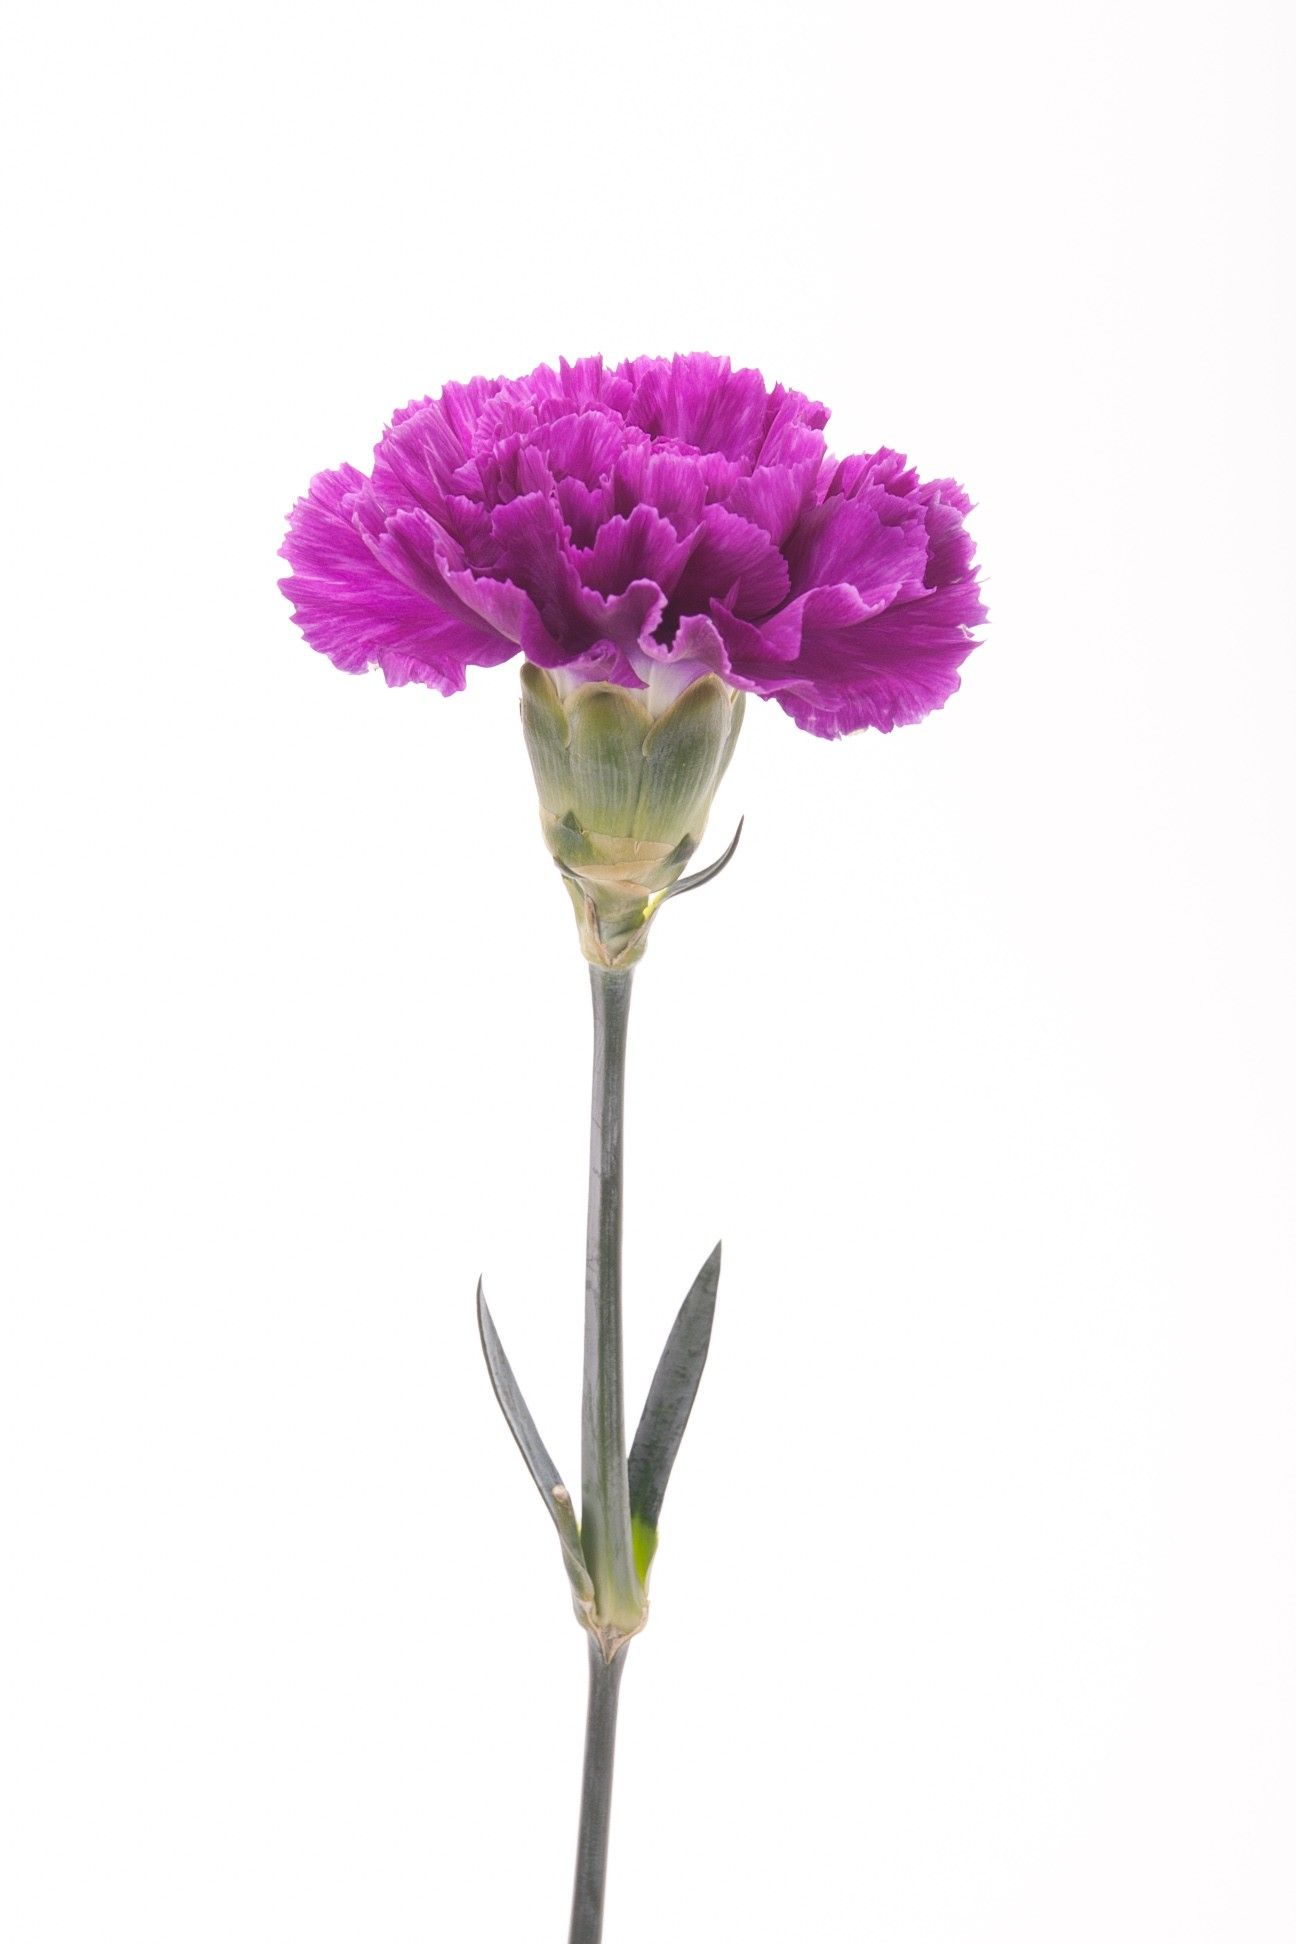 Tổng hợp hình ảnh hoa cẩm chướng tím đẹp nhất - [Kích thước hình ảnh: 1296x1944 px]